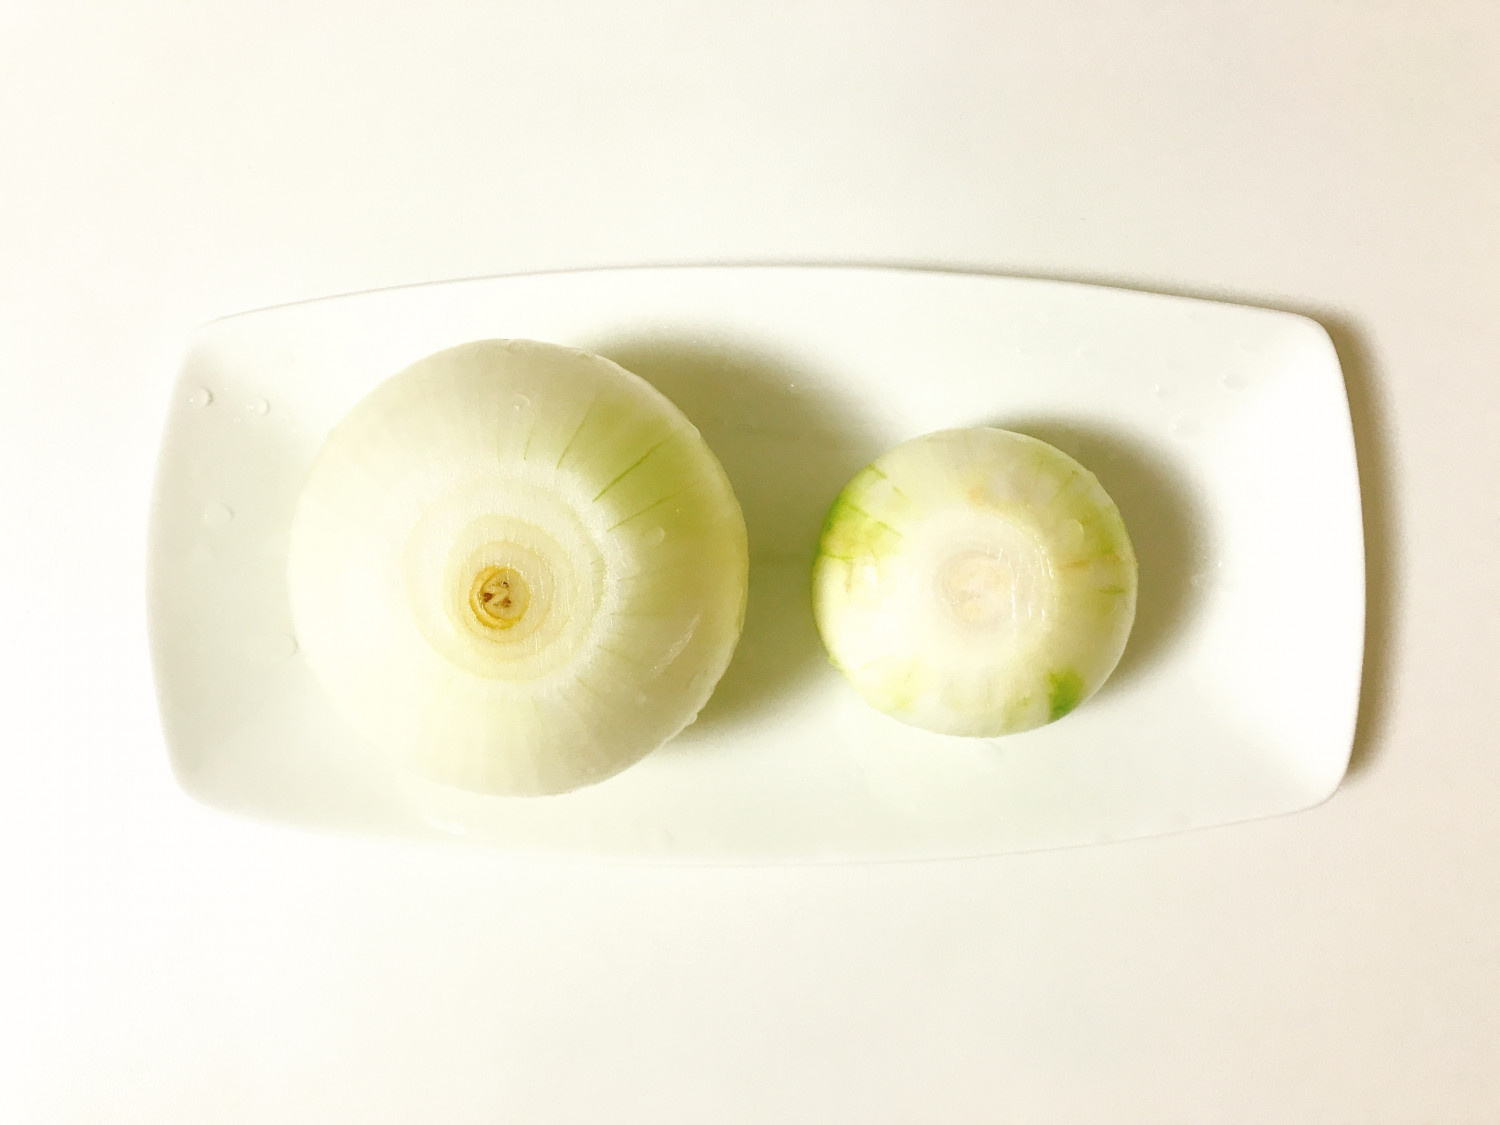 Flor de cebolla en Airfryer Receta de Jónatan (La Cocina de Jota)- Cookpad